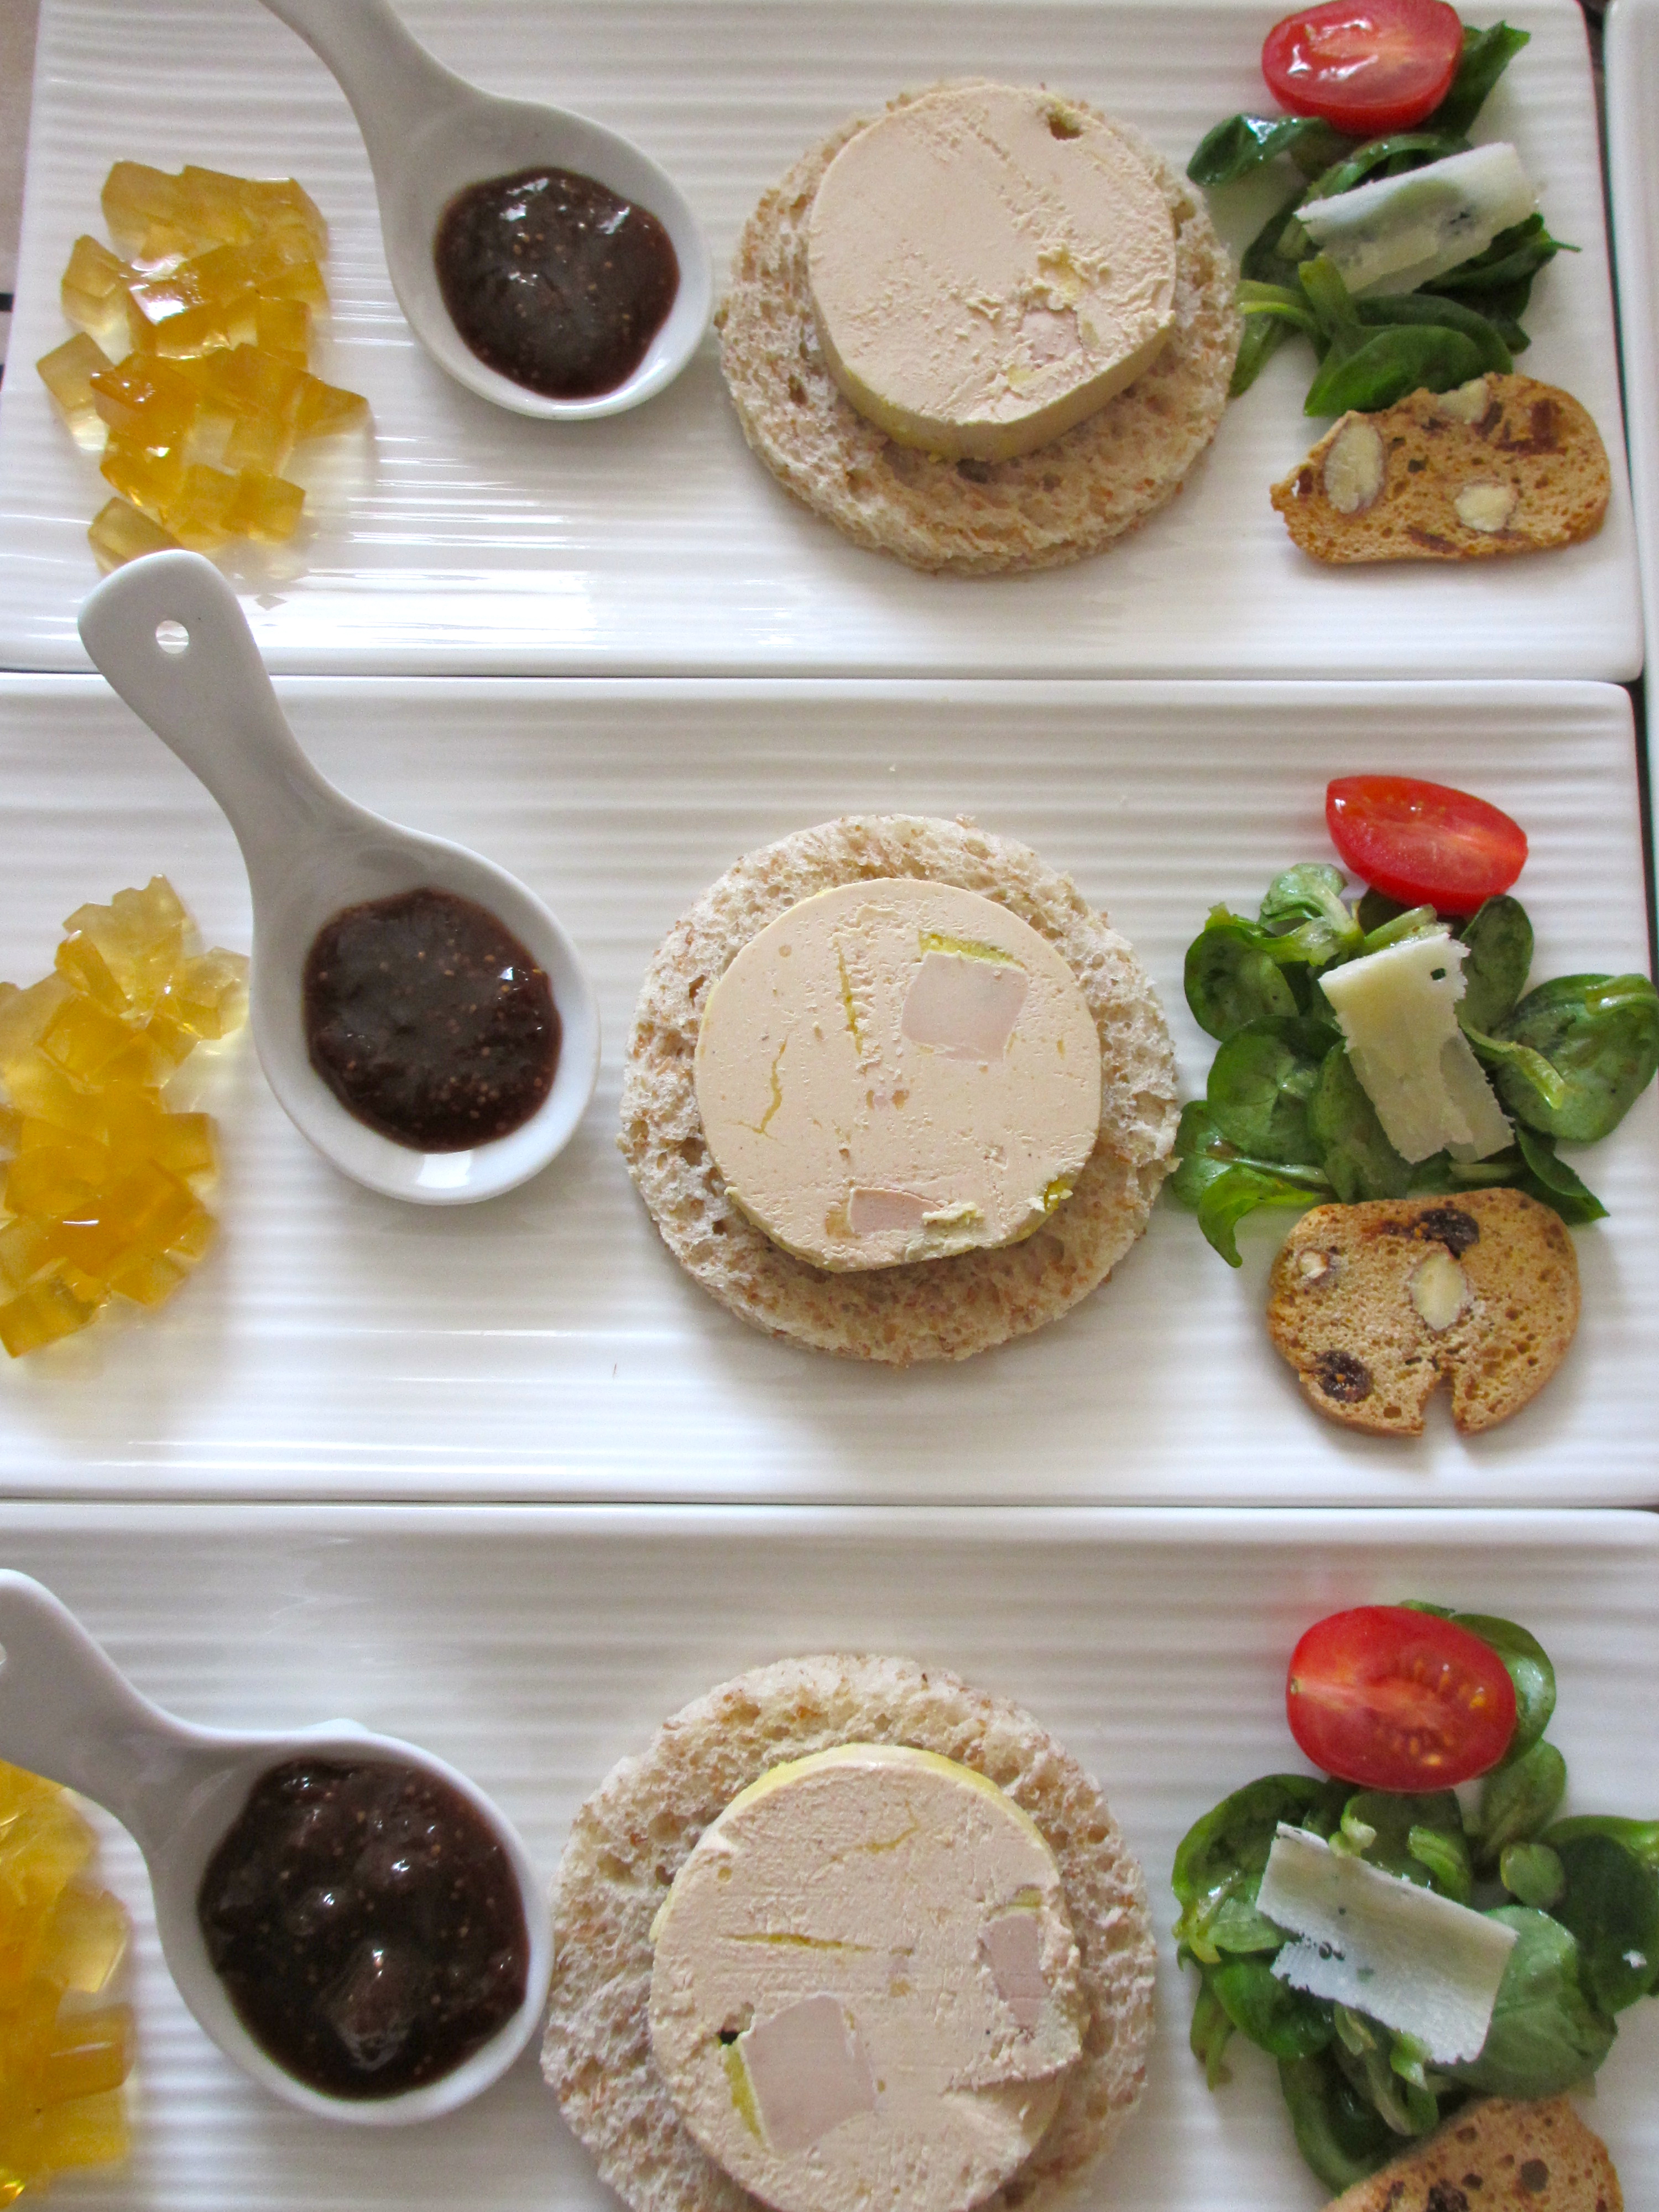 Présentation du foie gras à l'assiette - Idées de dressage original